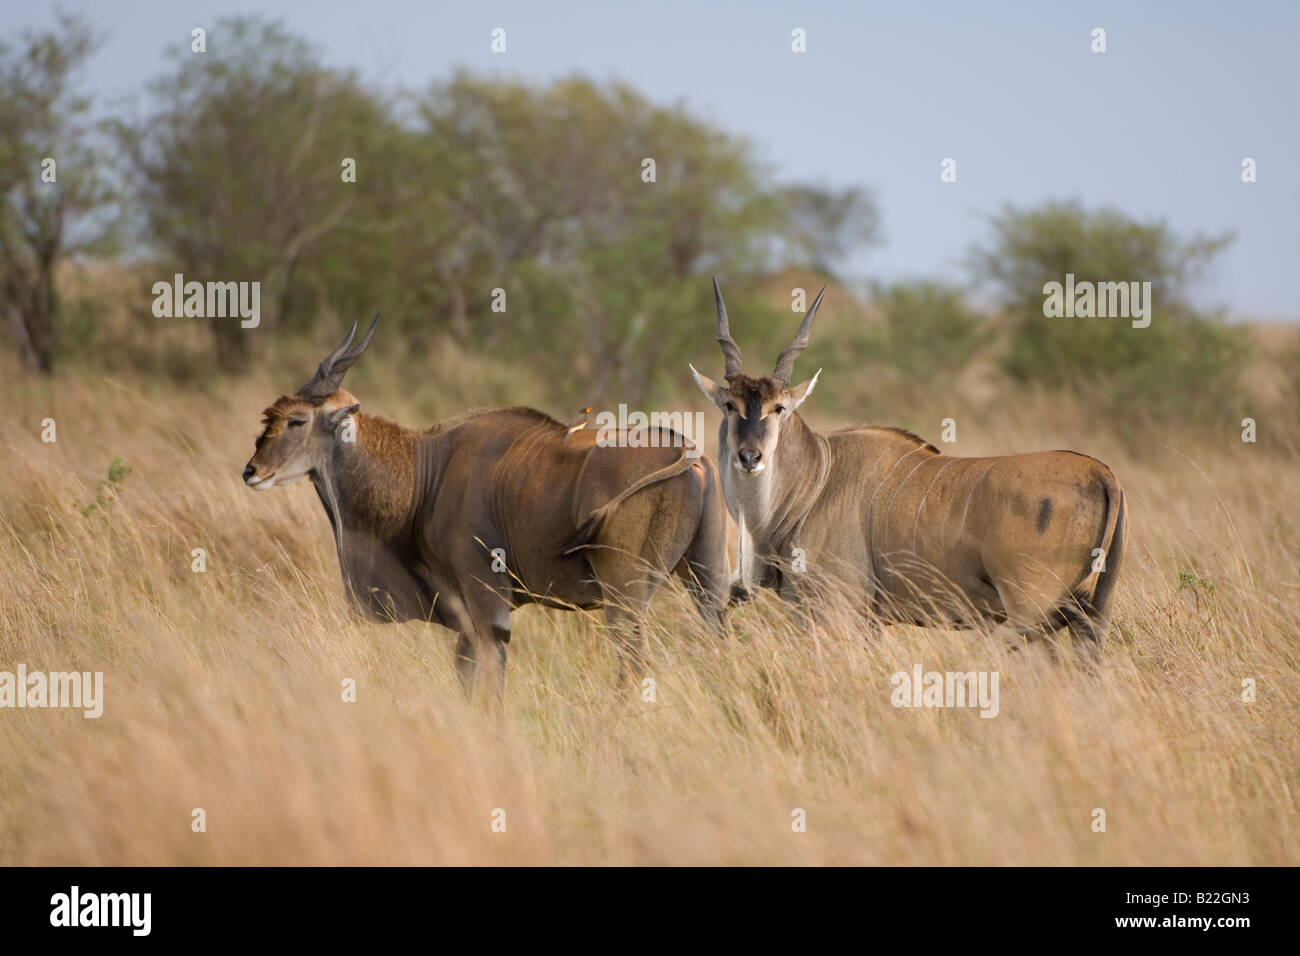 Common Eland, Kenya, Africa Stock Photo